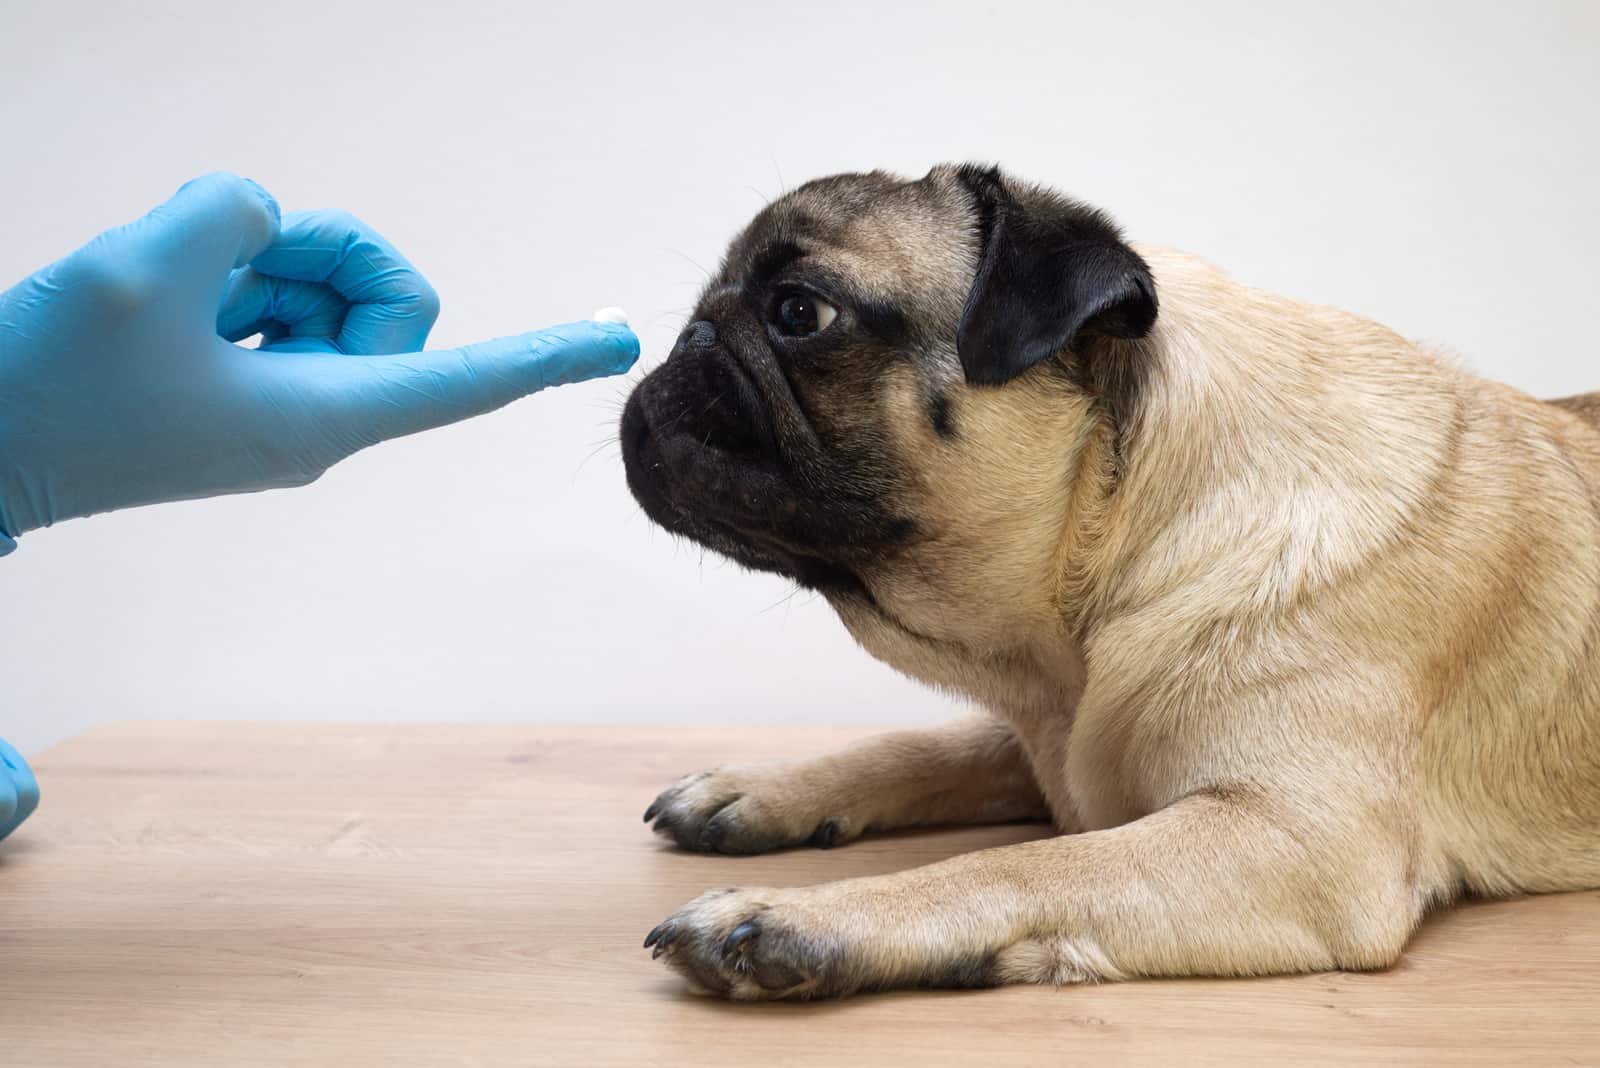 Tierarzt in medizinischen Handschuhen schmiert die Wunden des Hundes mit Salbe